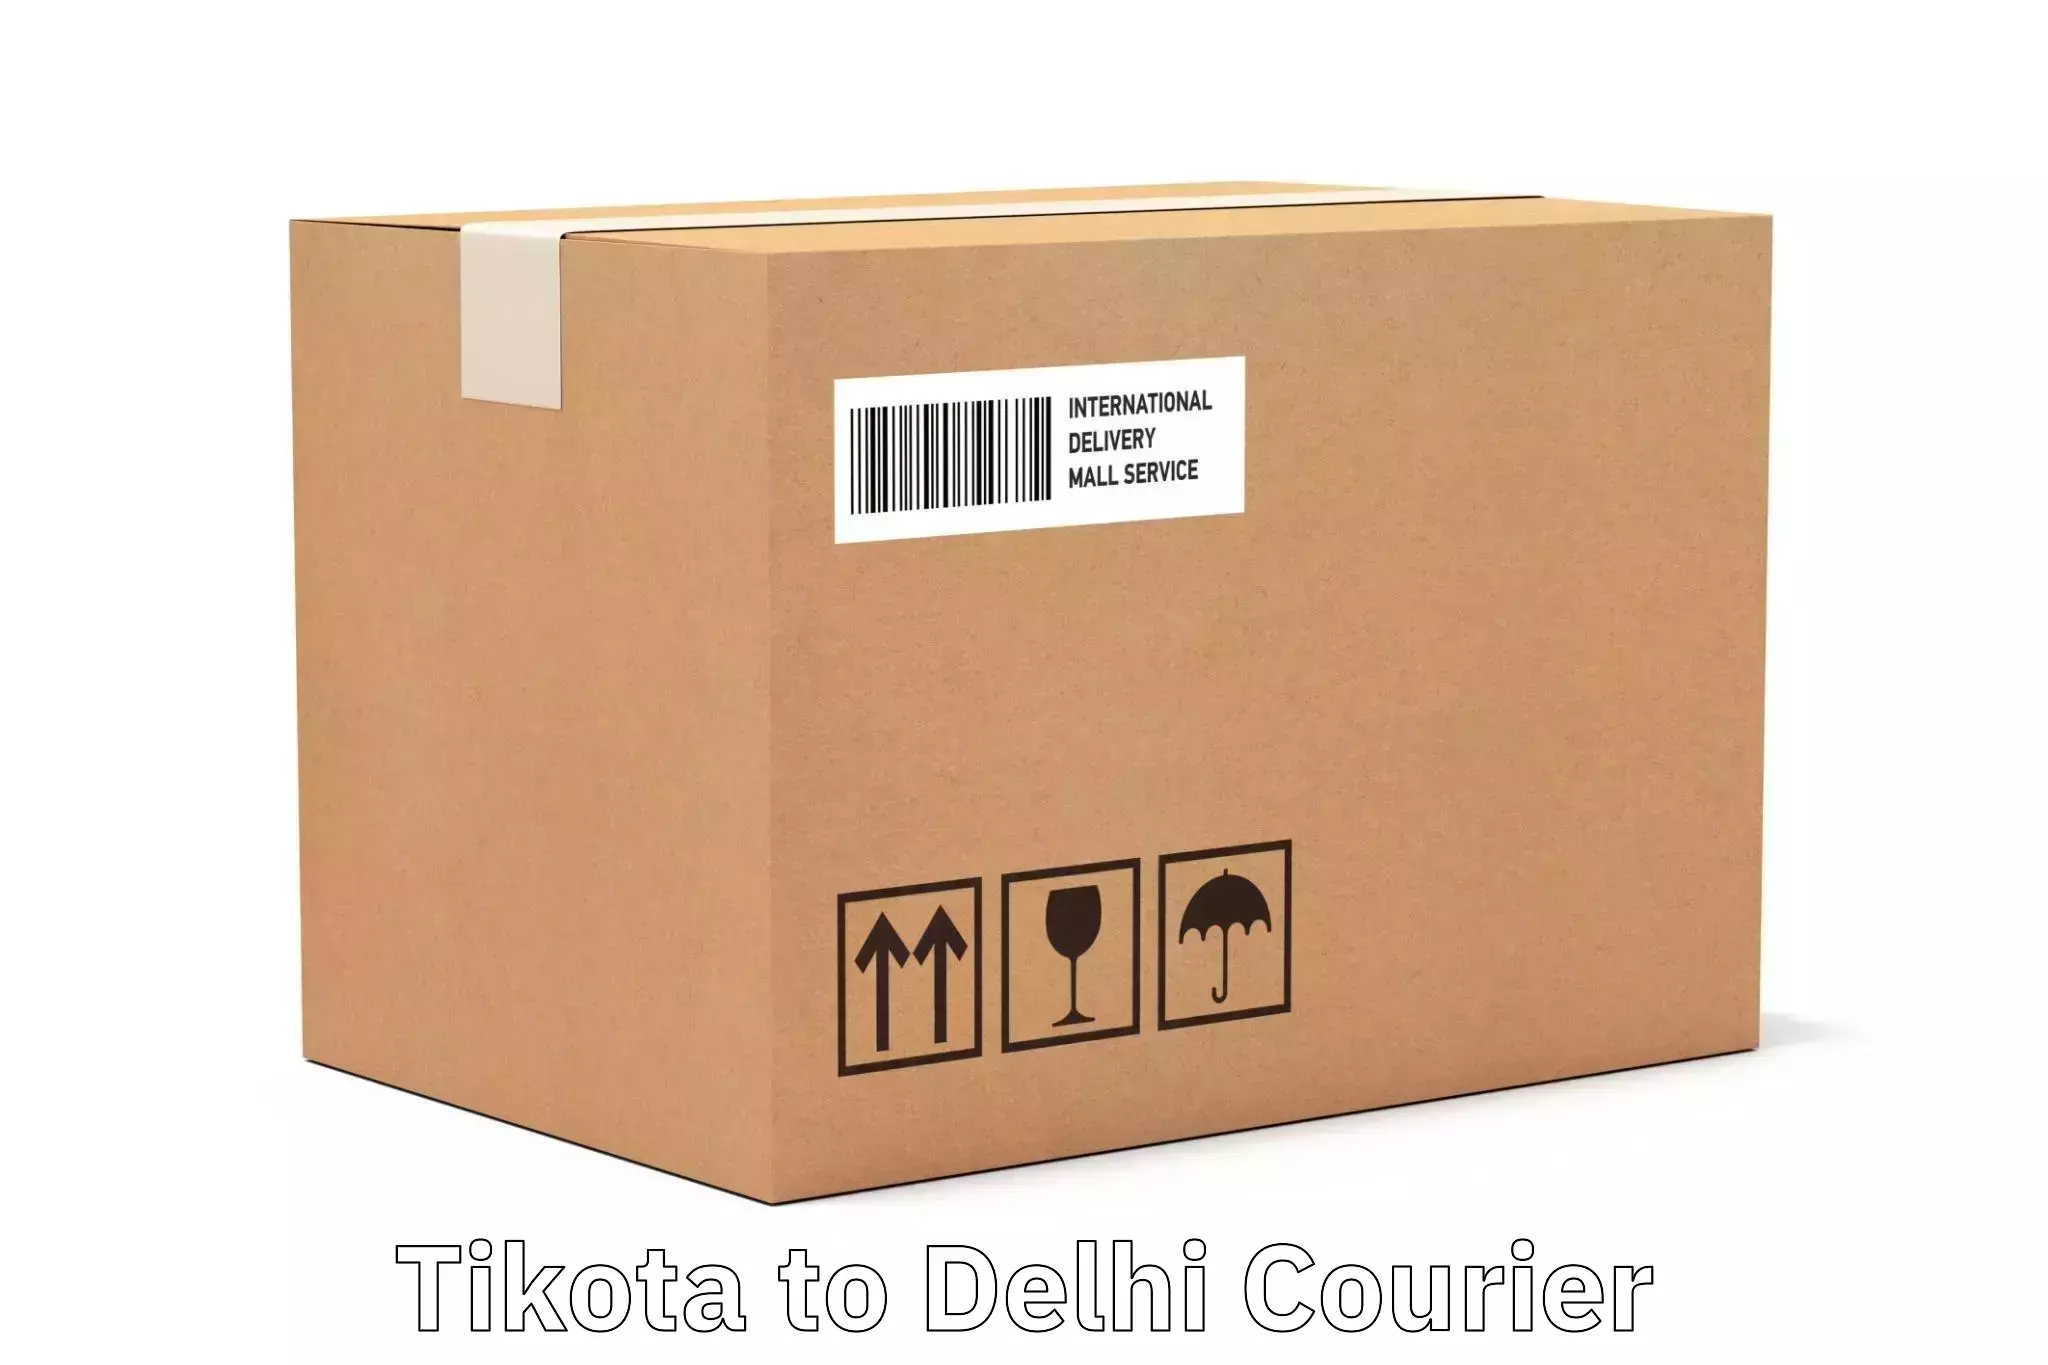 Express logistics service Tikota to Delhi